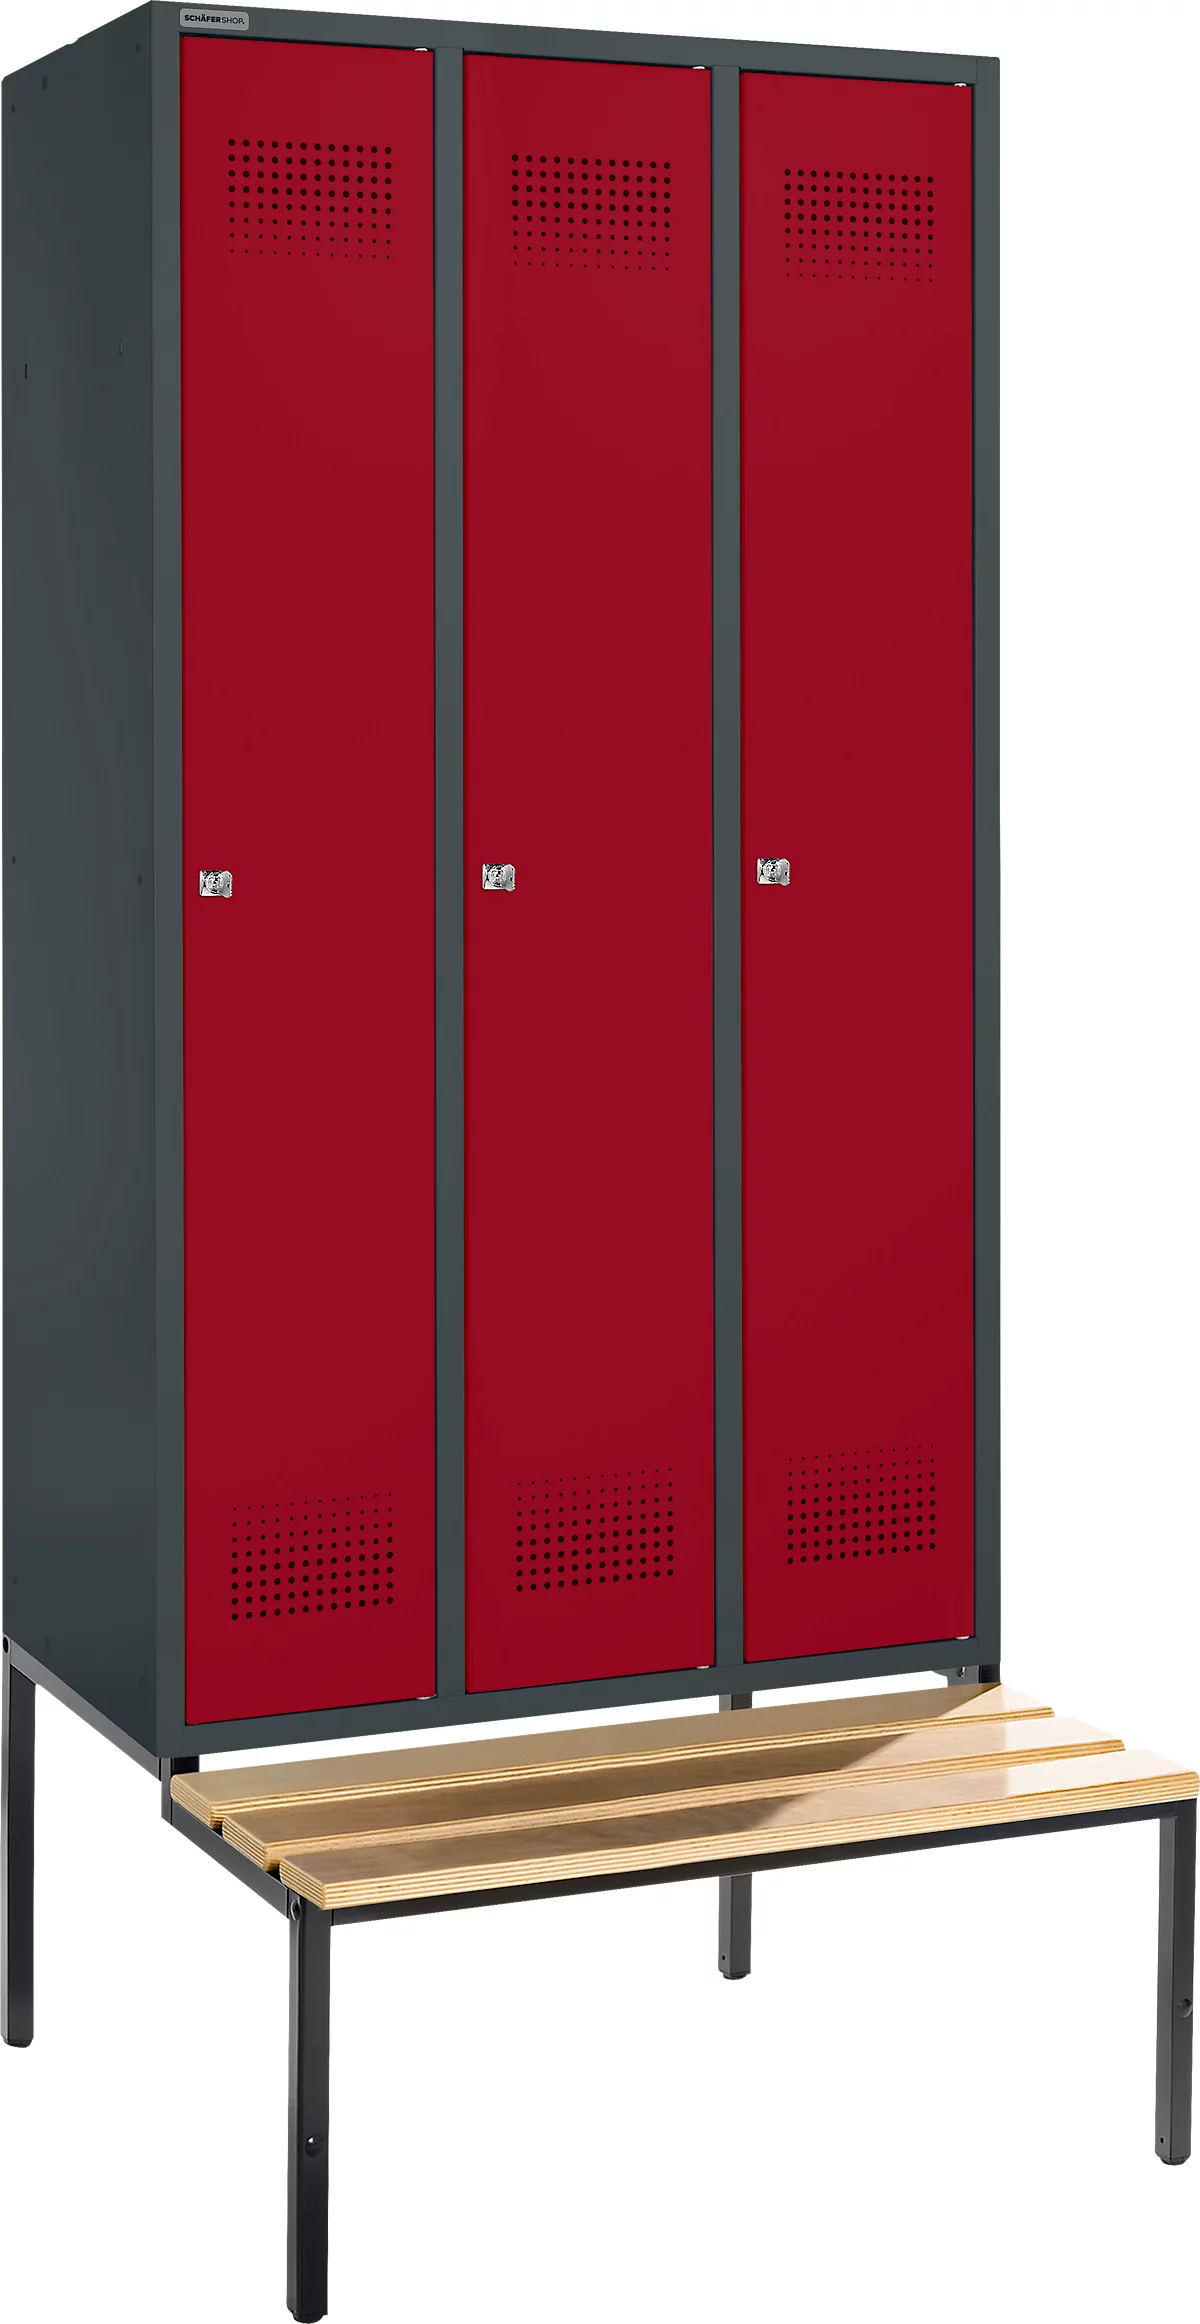 Schäfer Shop Genius Taquilla con banco, 3 compartimentos, cerradura de cilindro, antracita/rojo rubí